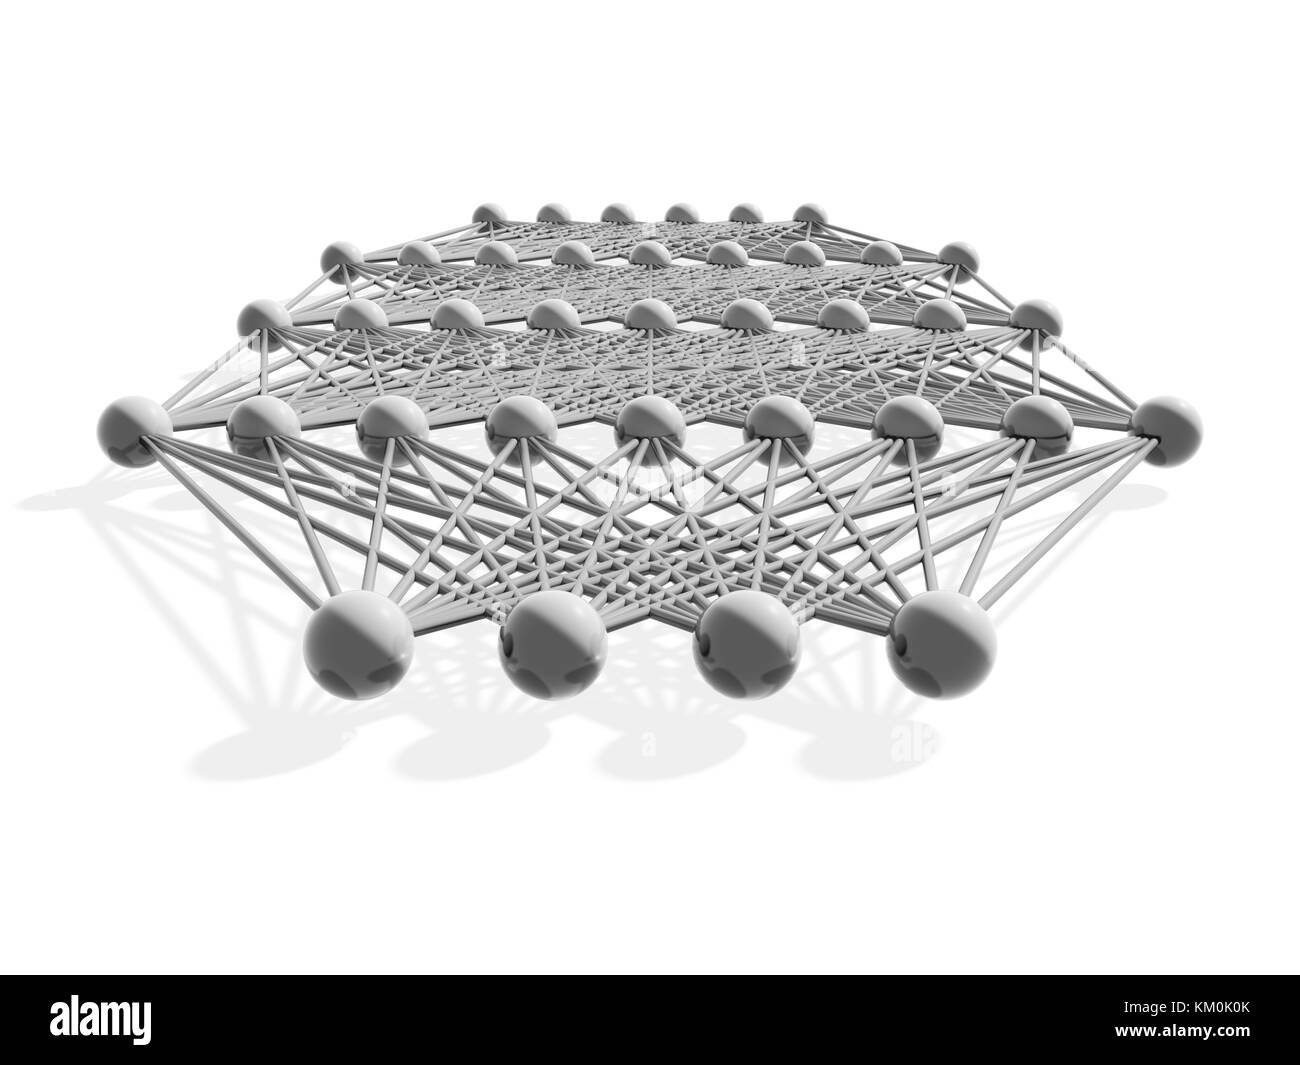 Künstliche tiefe neuronale Netzstruktur, graues Metallic-Modell isoliert auf weiß, 3D-Illustration Stockfoto